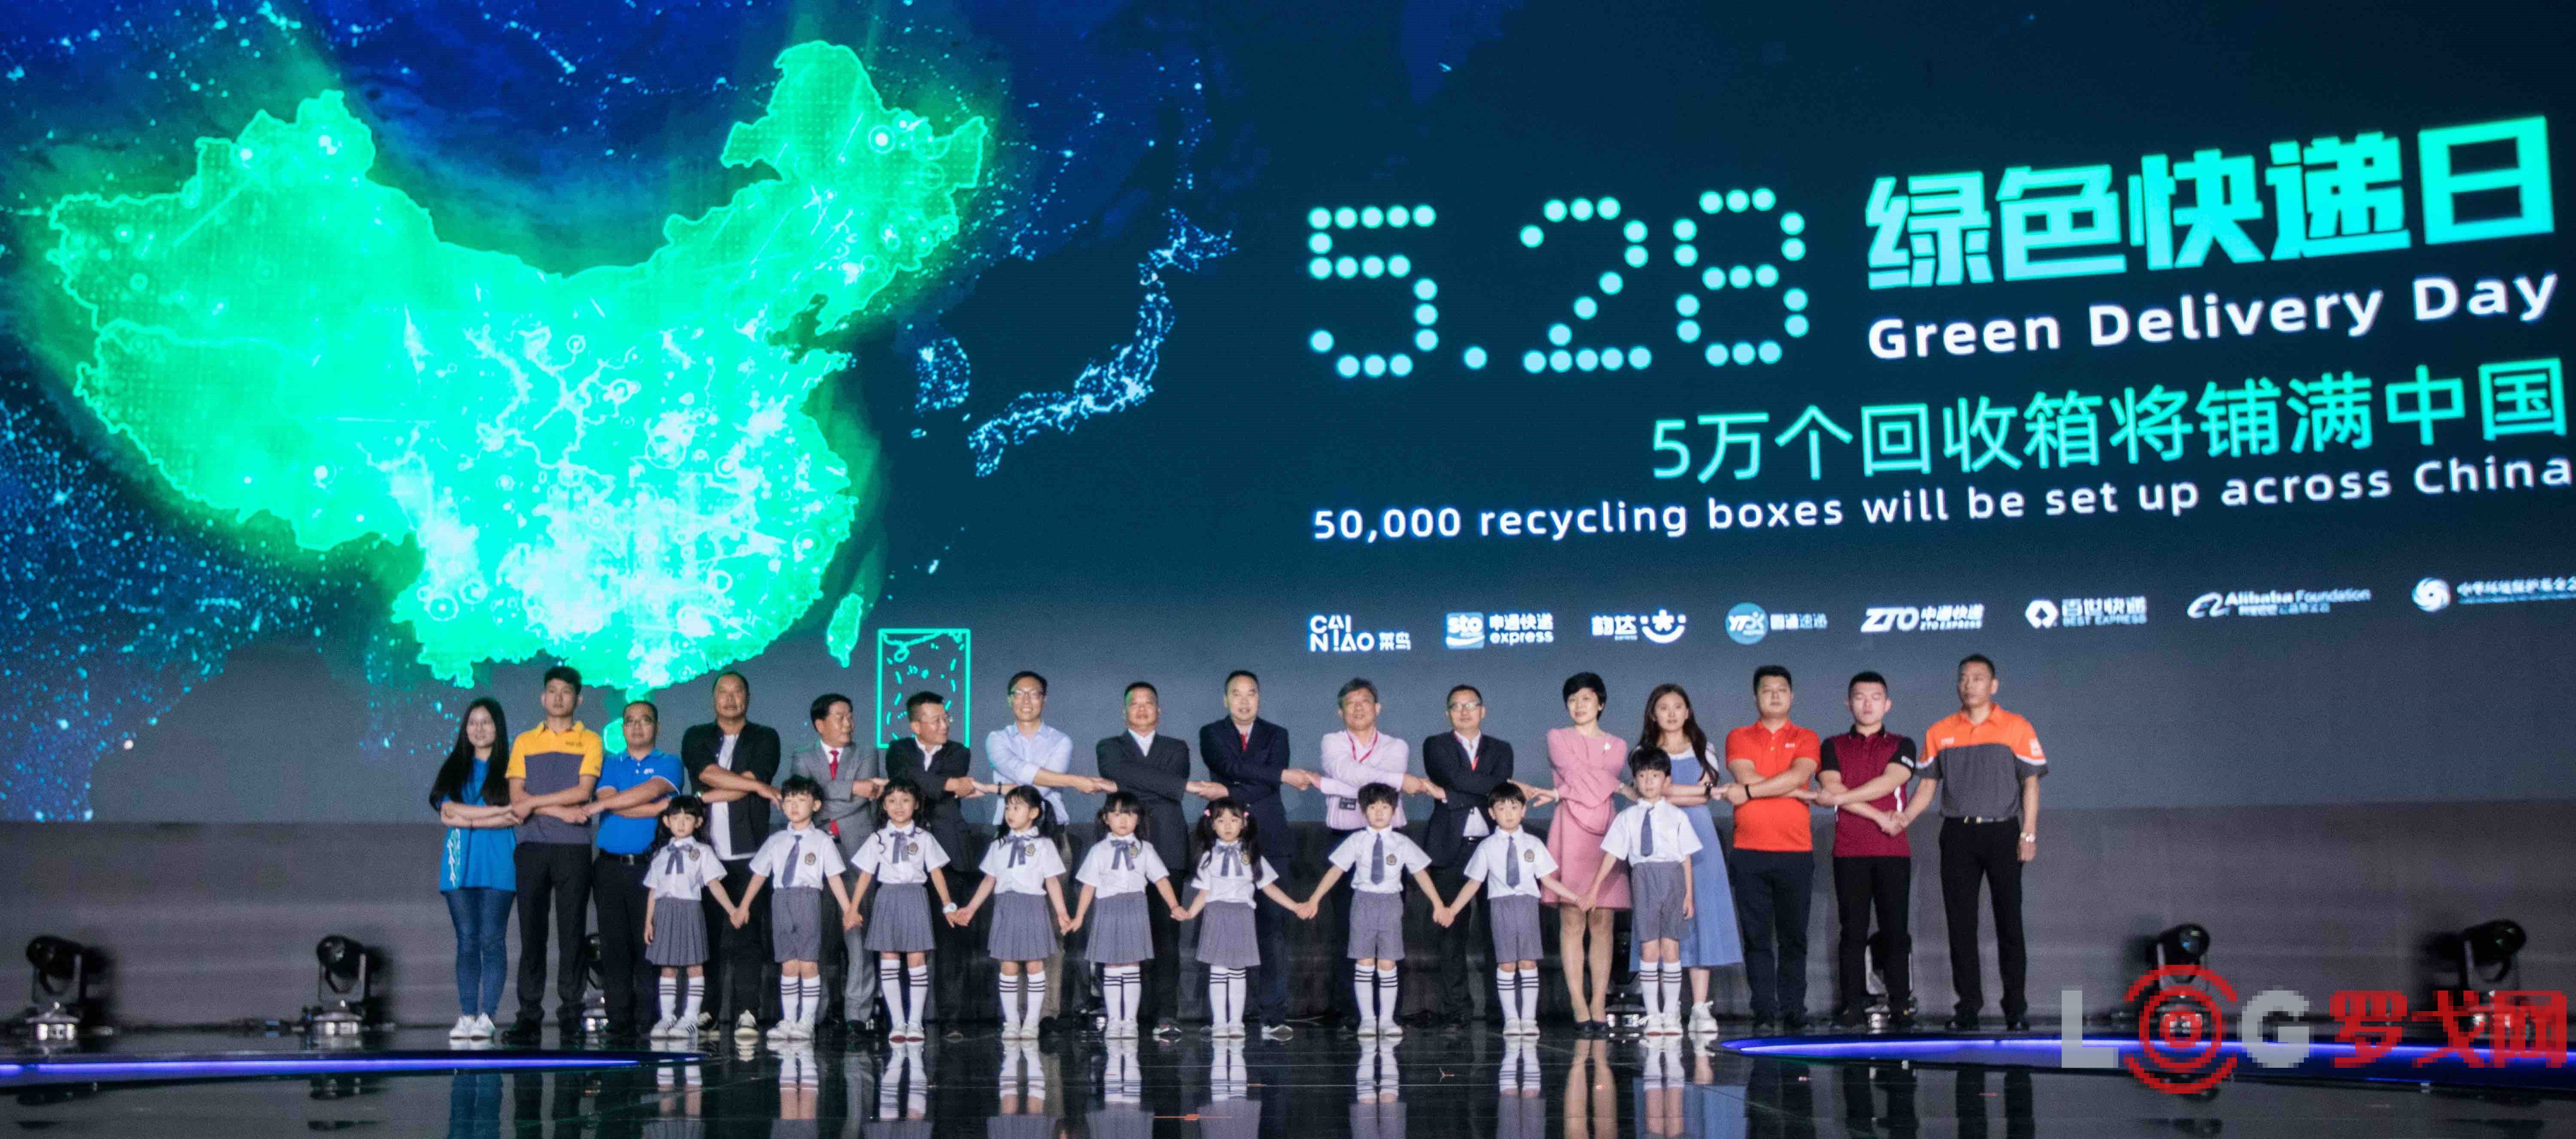 菜鸟联盟共启5.28绿色快递日 将新增5万个绿色回收箱